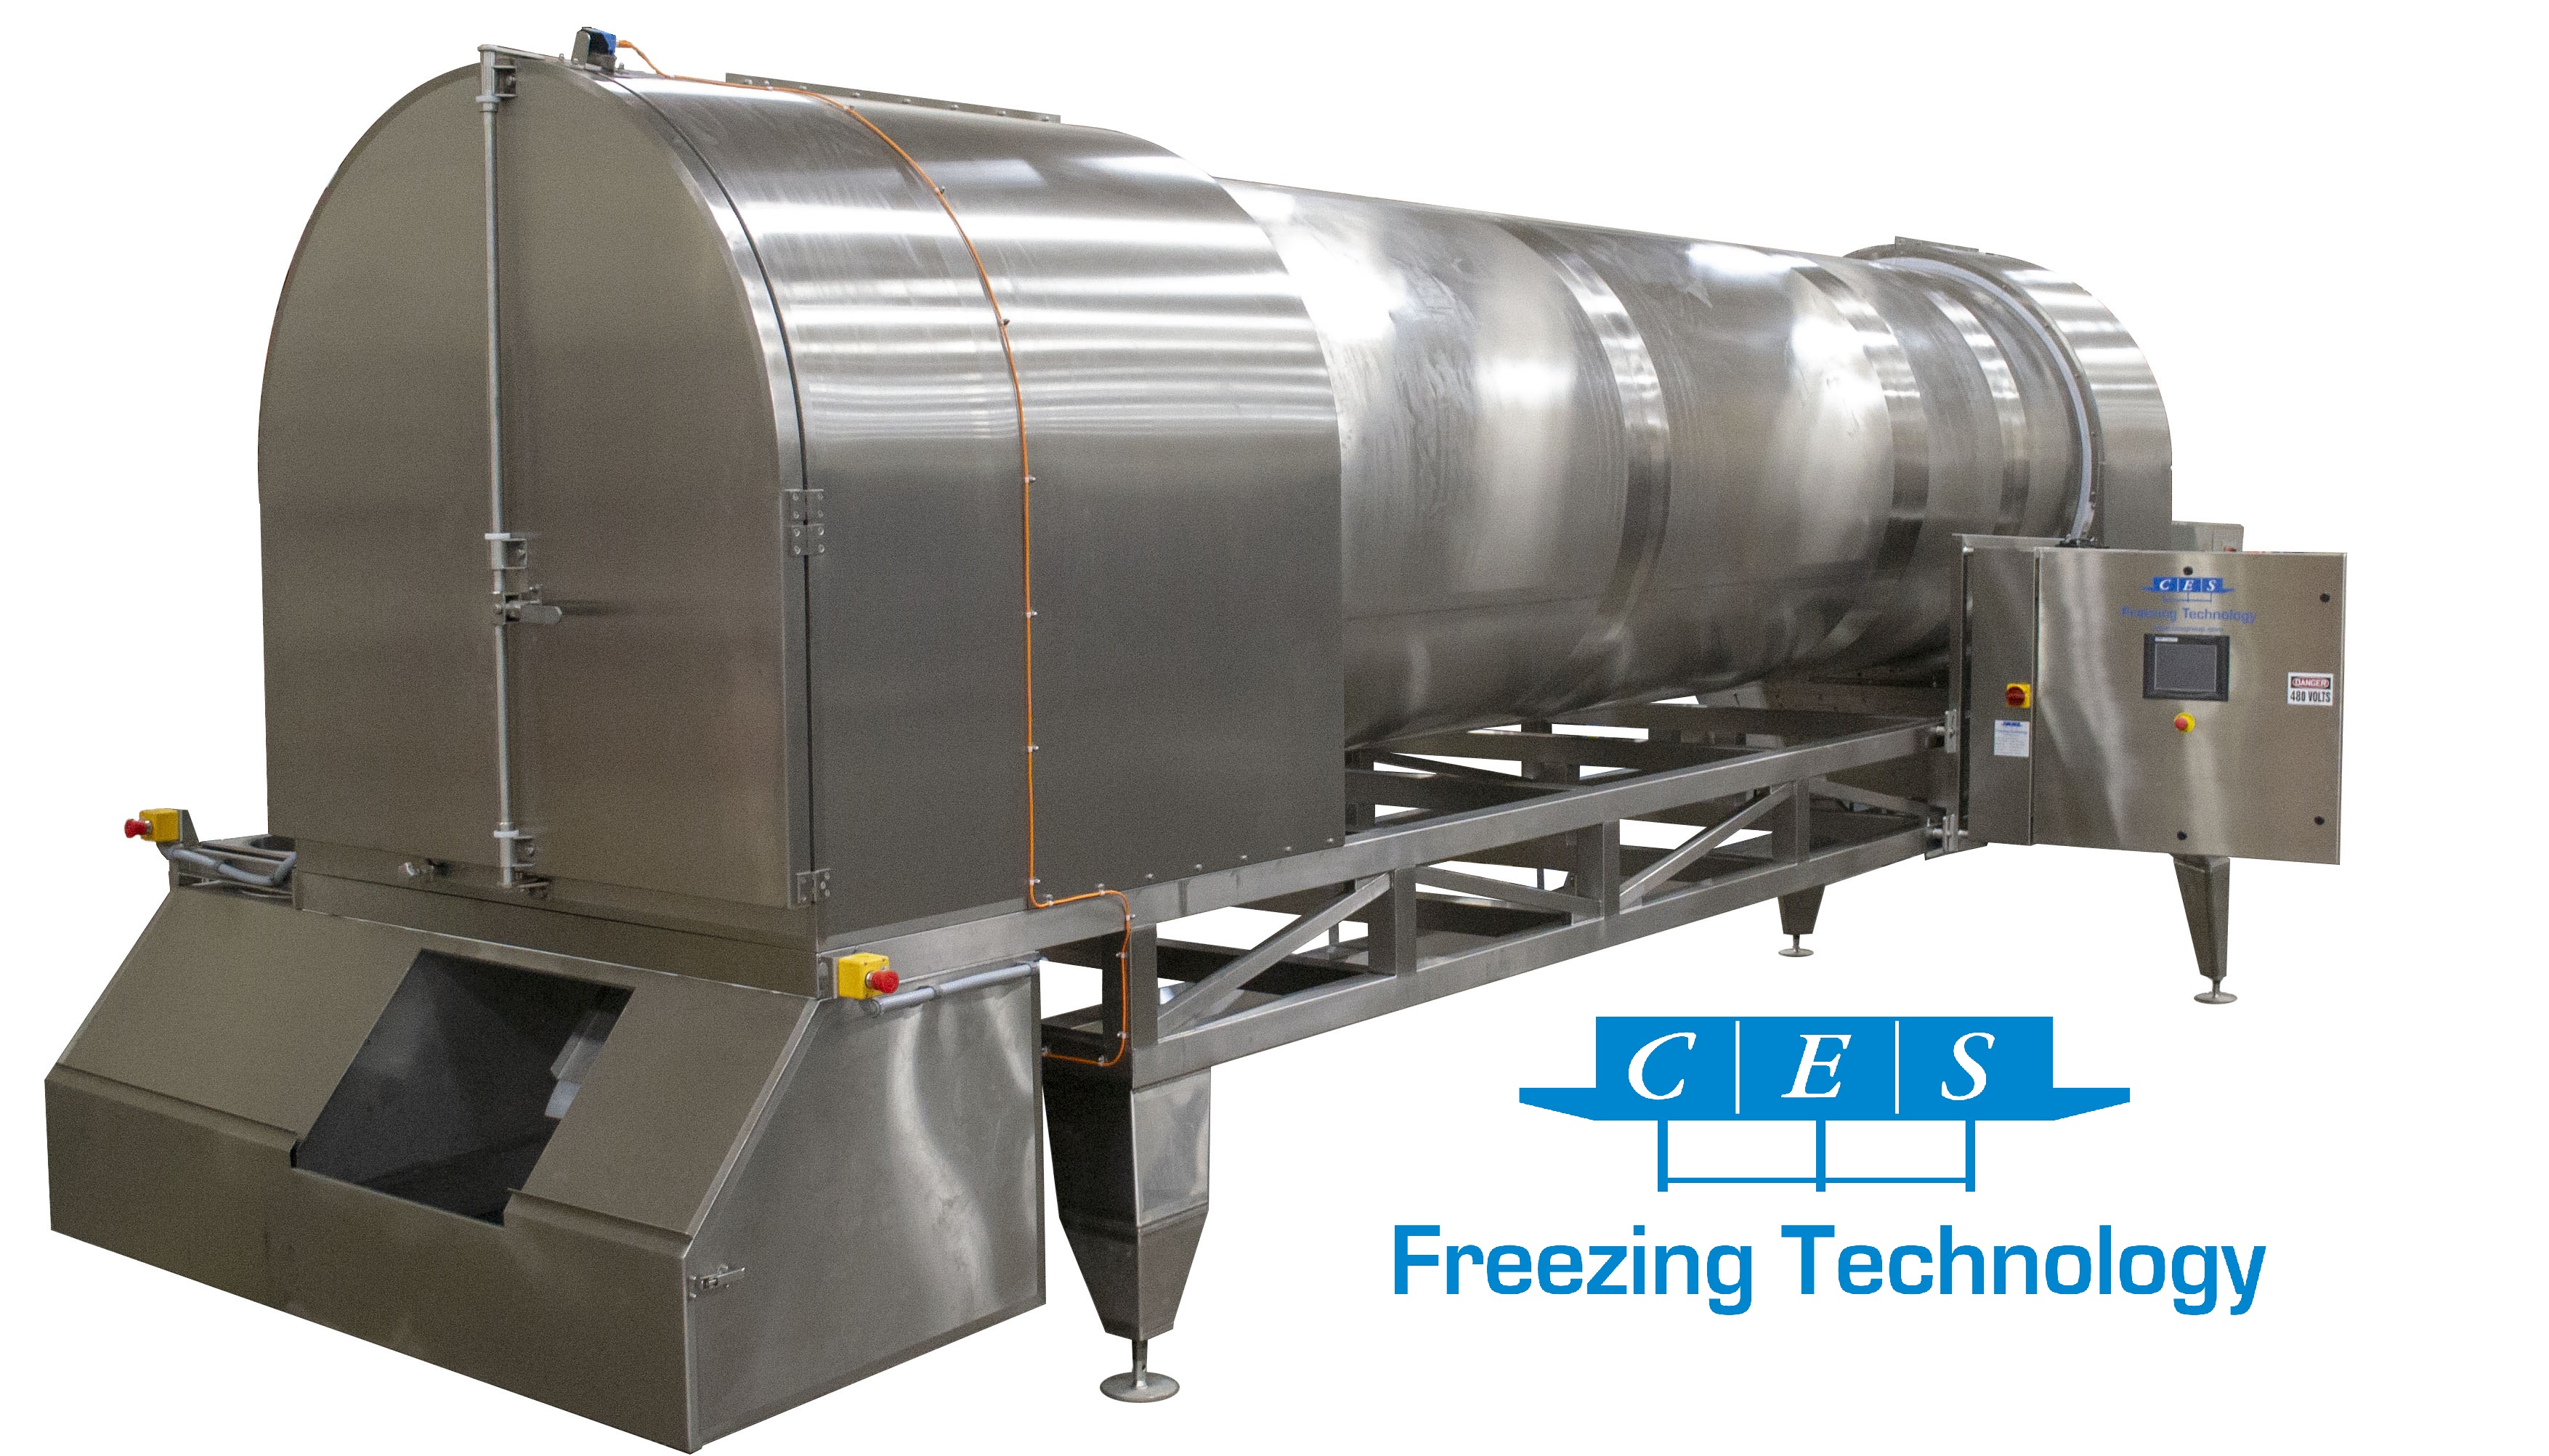 Tumbler Freezer by CES Freezing Technology